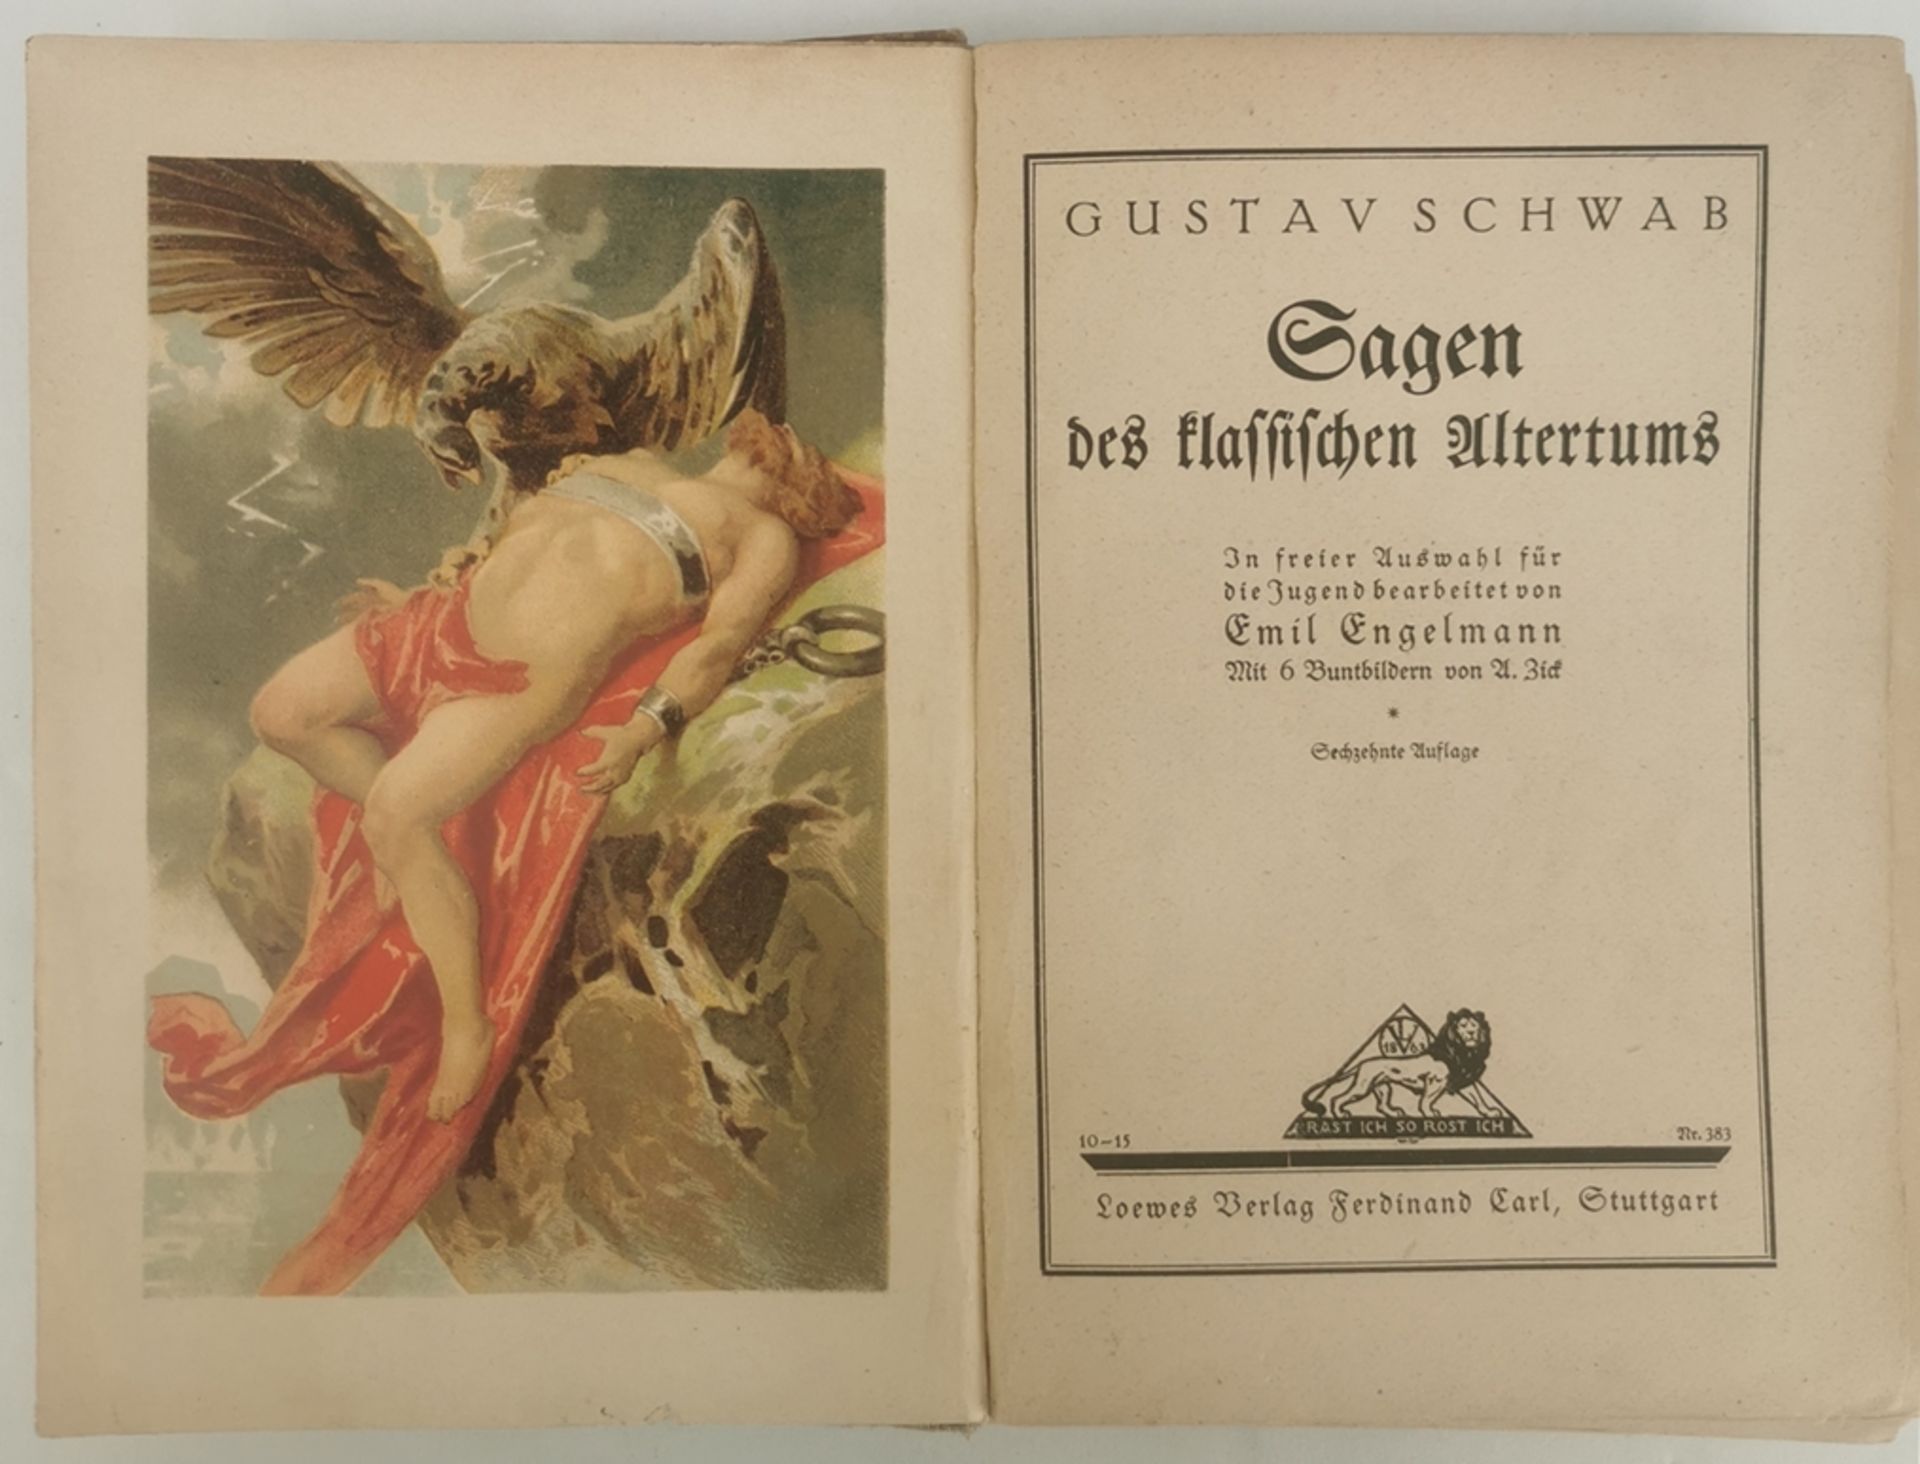 Schwab, Gustav "Sagen des klassischen Altertums", mit 6 Buntbildern, um 1920, Loewes Verlag Ferdina